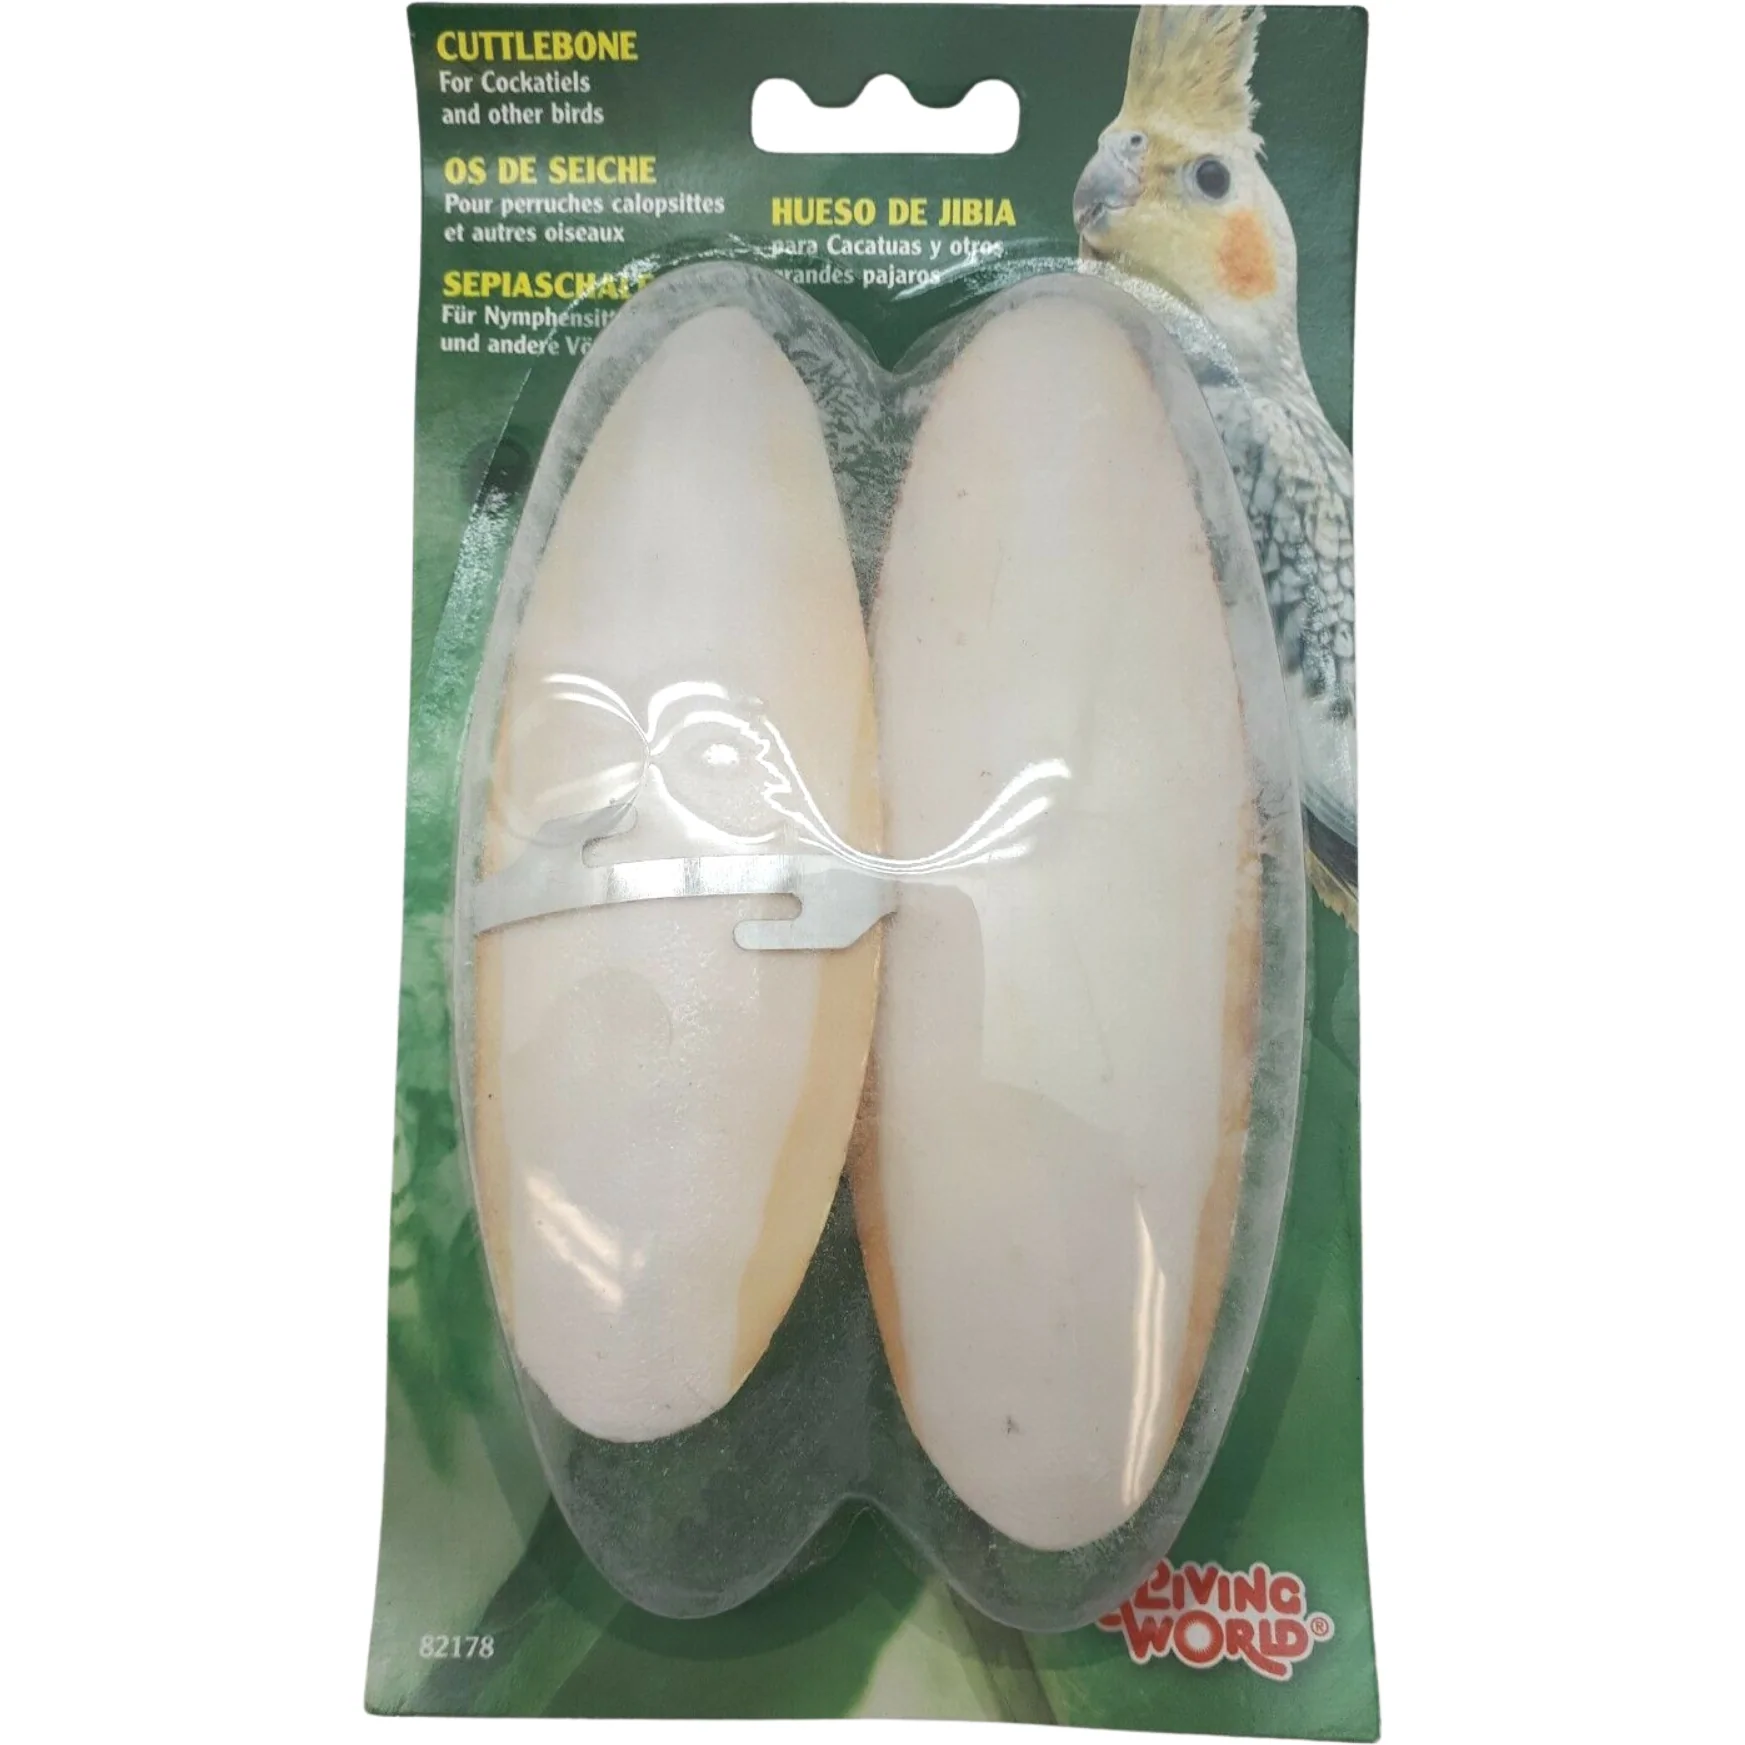 Living World Cuttlebone for Cockatiels / Bird Supplies / Bird Cage Accessories **DEALS**